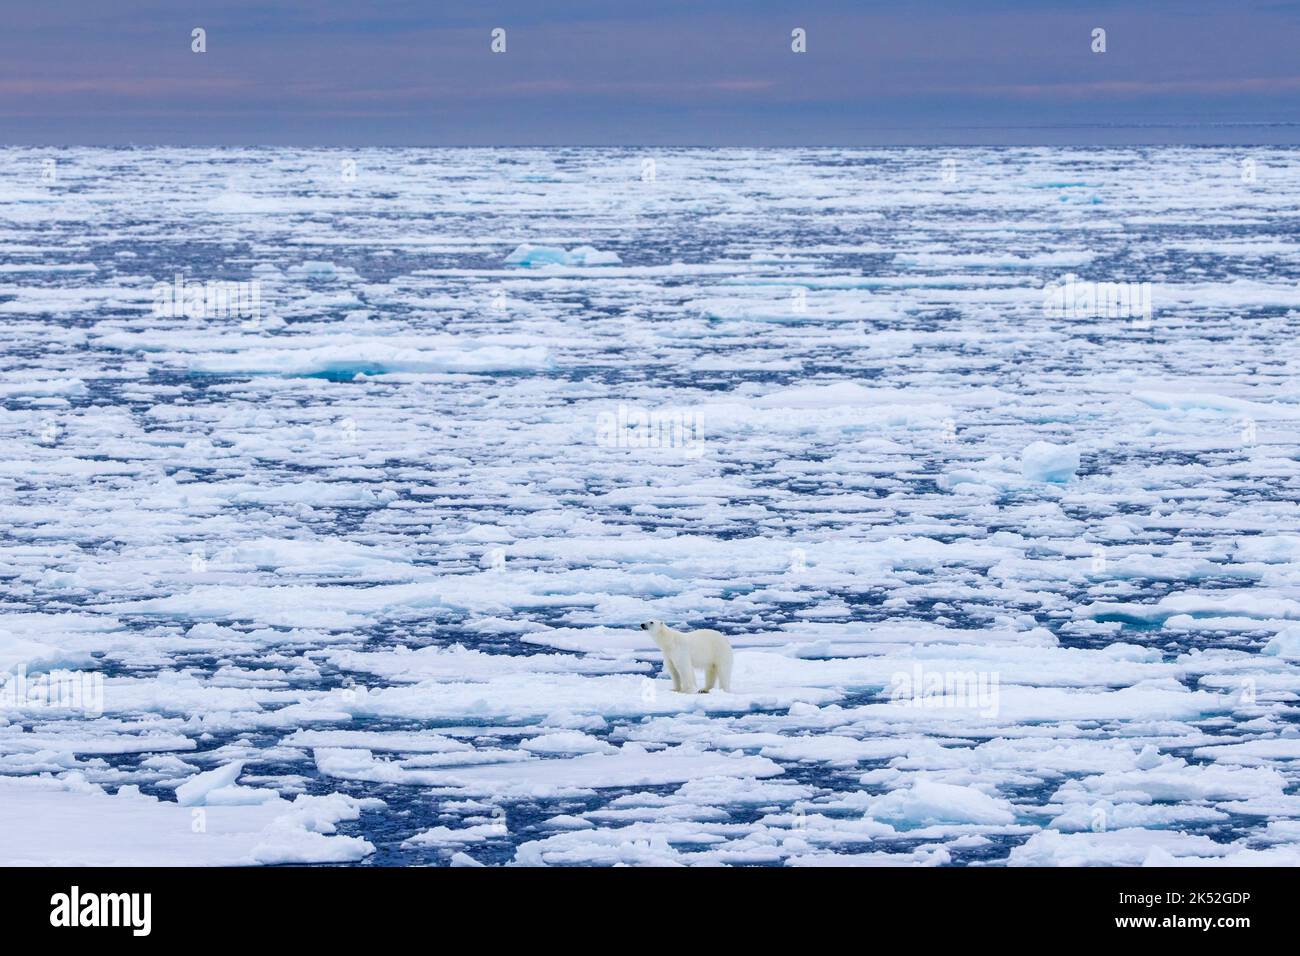 Oso polar solitario (Ursus maritimus) parado sobre hielo de deriva / témpanos de hielo en el Océano Ártico a lo largo de la costa de Svalbard, Spitsbergen, Noruega Foto de stock